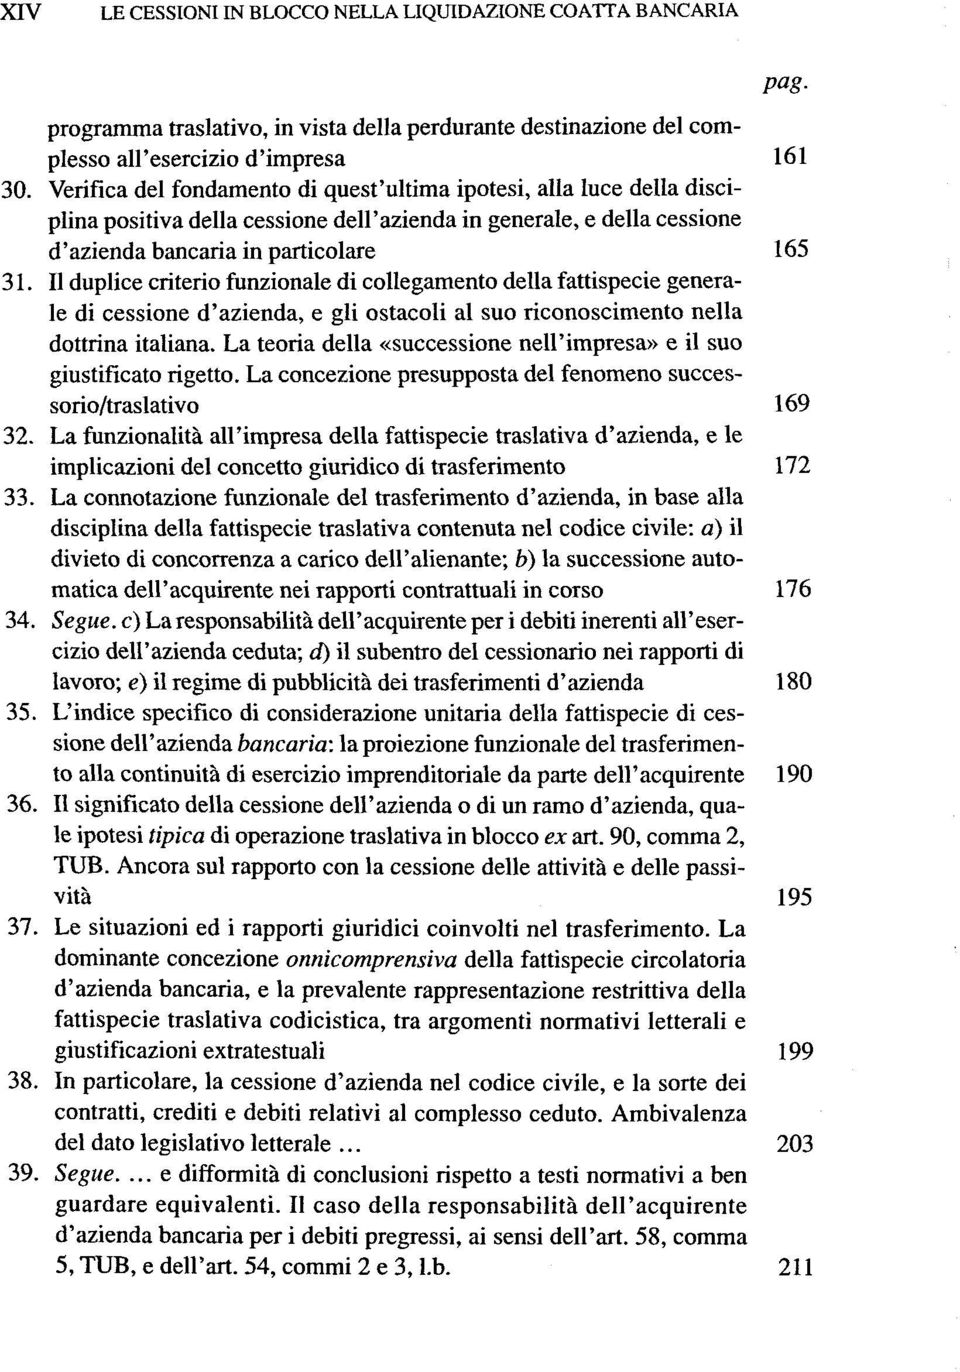 II duplice criterio funzionale di collegamento della fattispecie generale di cessione d'azienda, e gli ostacoli al suo riconoscimento nella dottrina italiana.